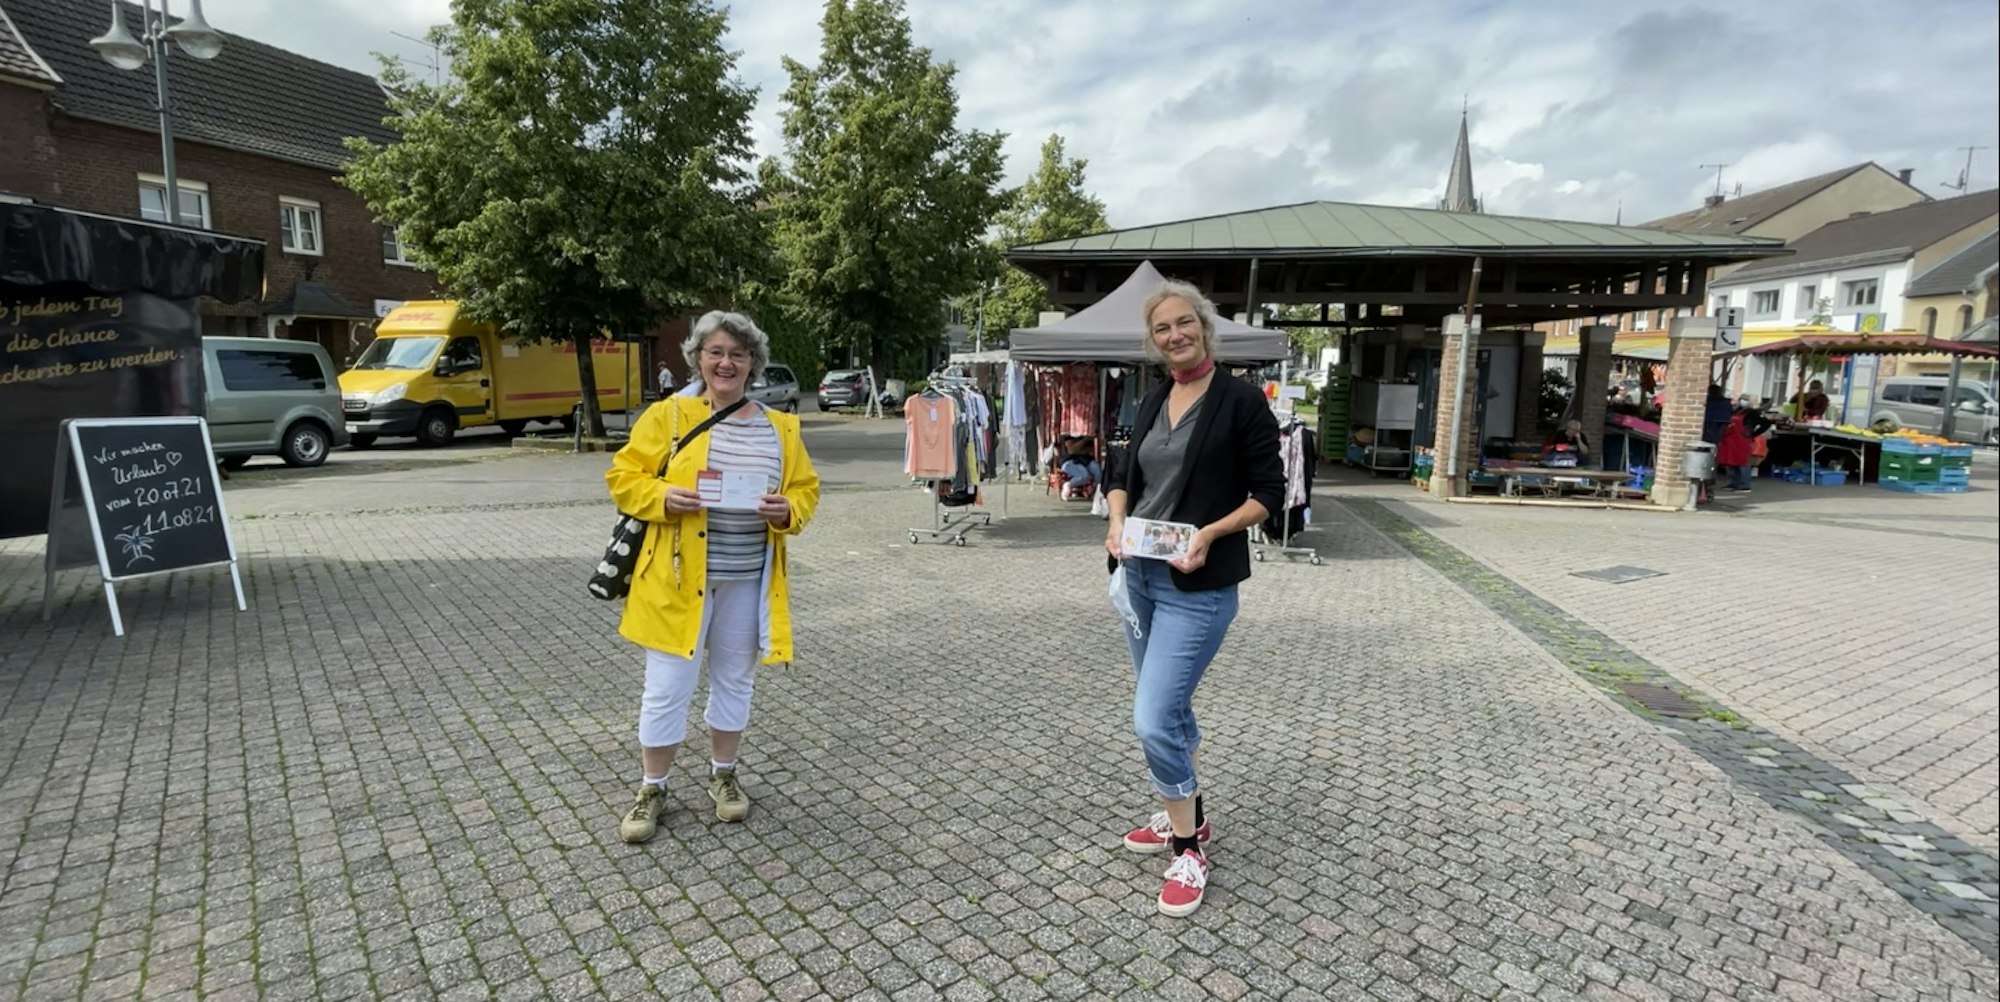 Anette Göhler (r.) und Janine Schiller von der Aktionsgruppe „Stommeln für die Bücherei“ beim Verteilen der Protestkarten.